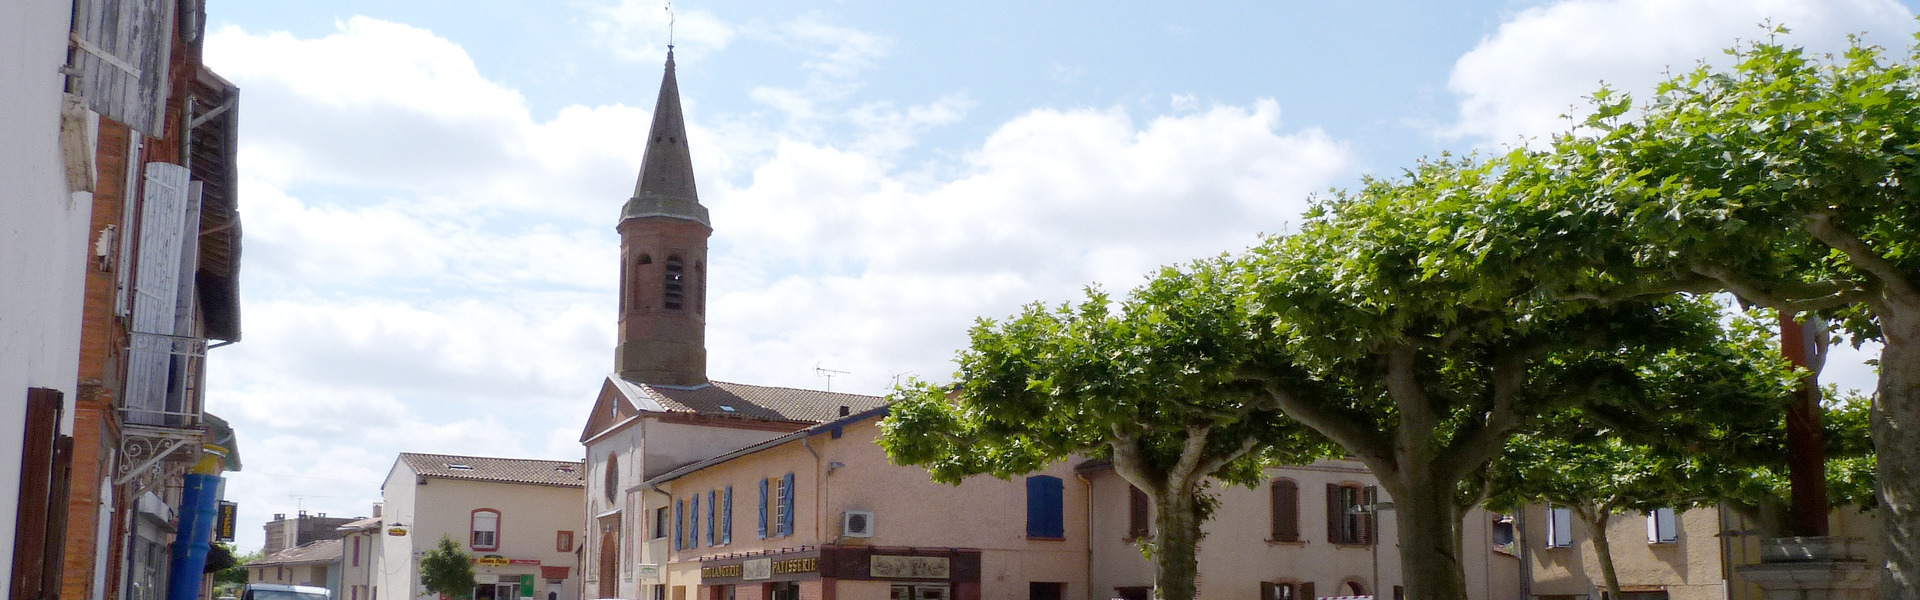 Mairie Albias Commune Tarn-et-Garonne